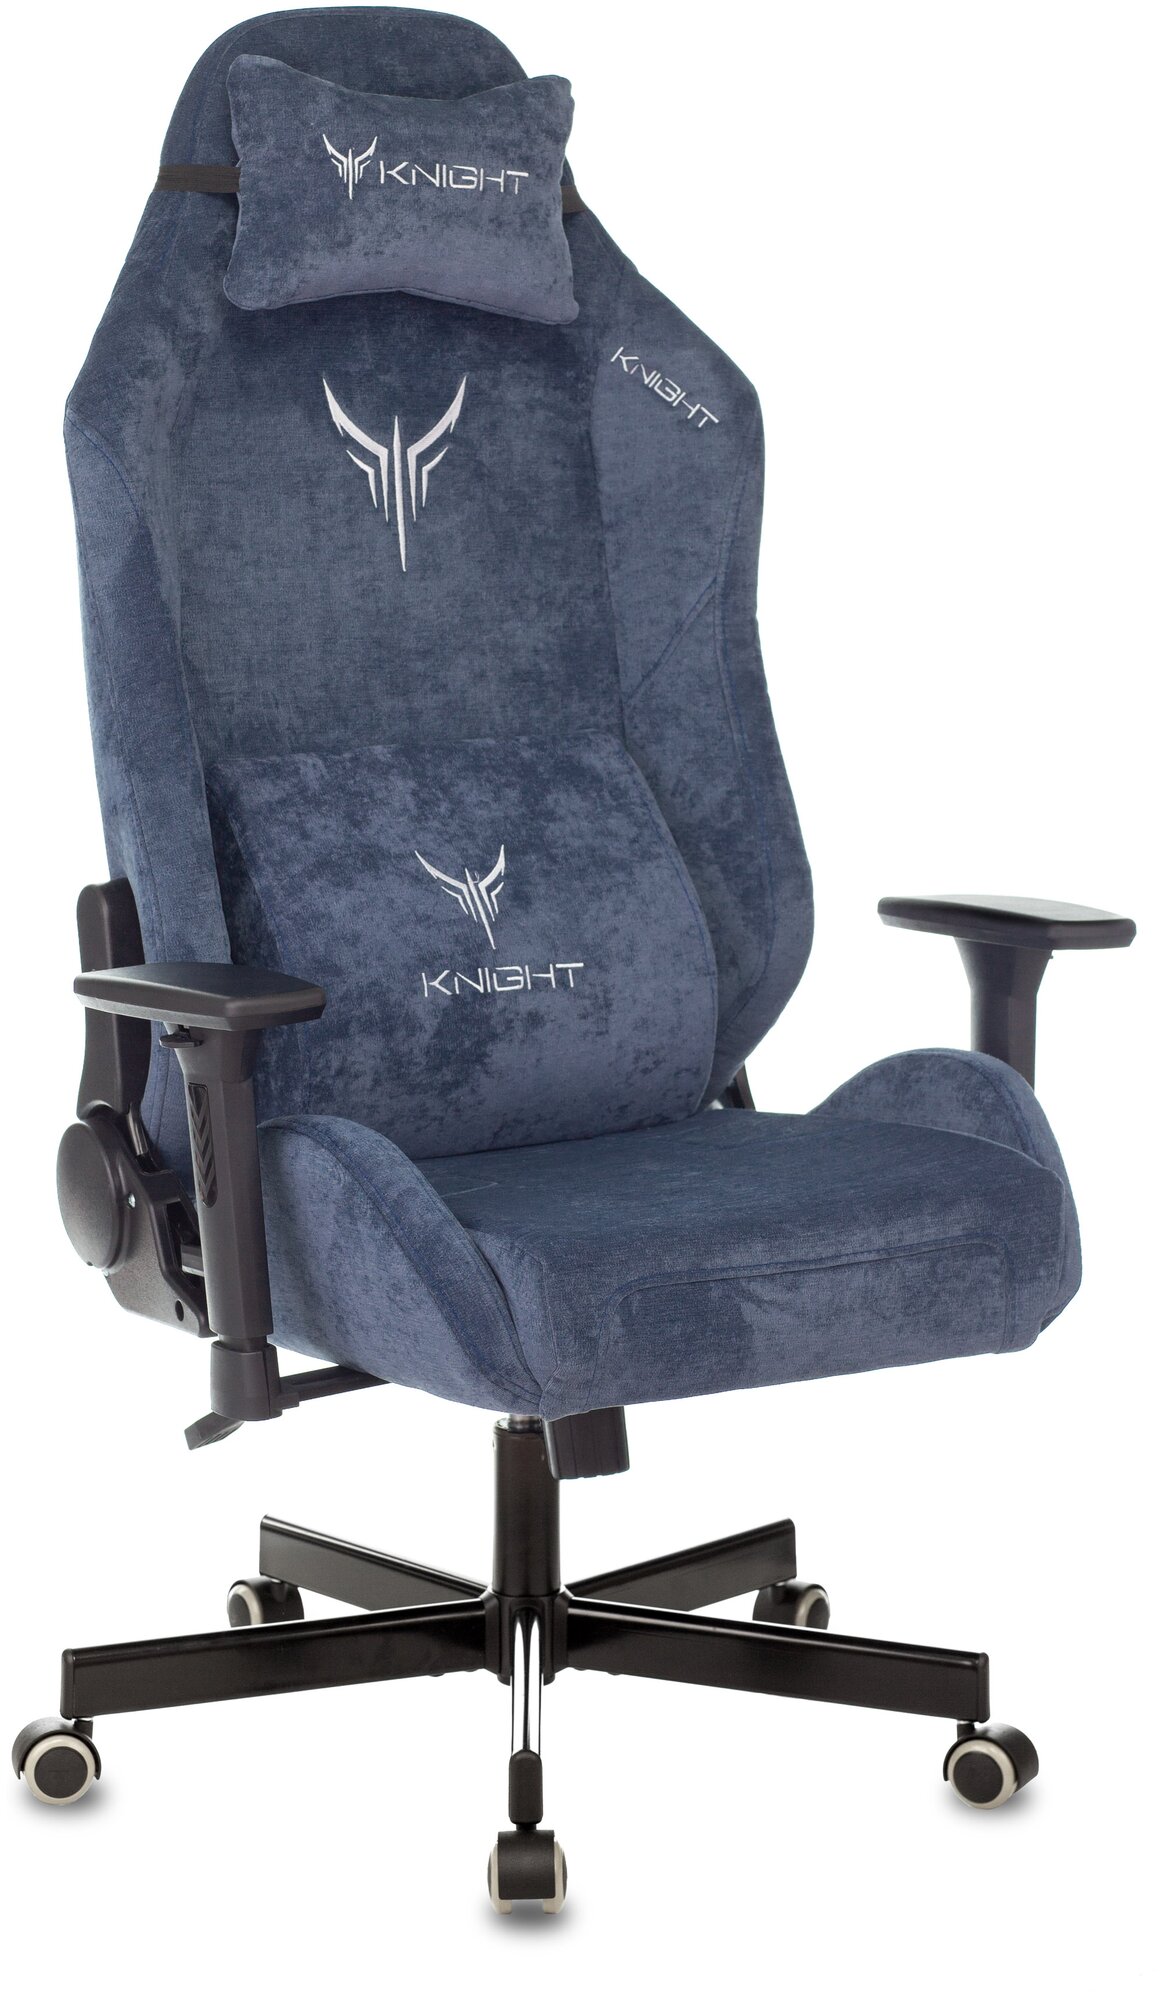 Кресло игровое Knight N1 Fabric синий, ткань / Компьютерное геймерское кресло, 2 подушки, крестовина металл